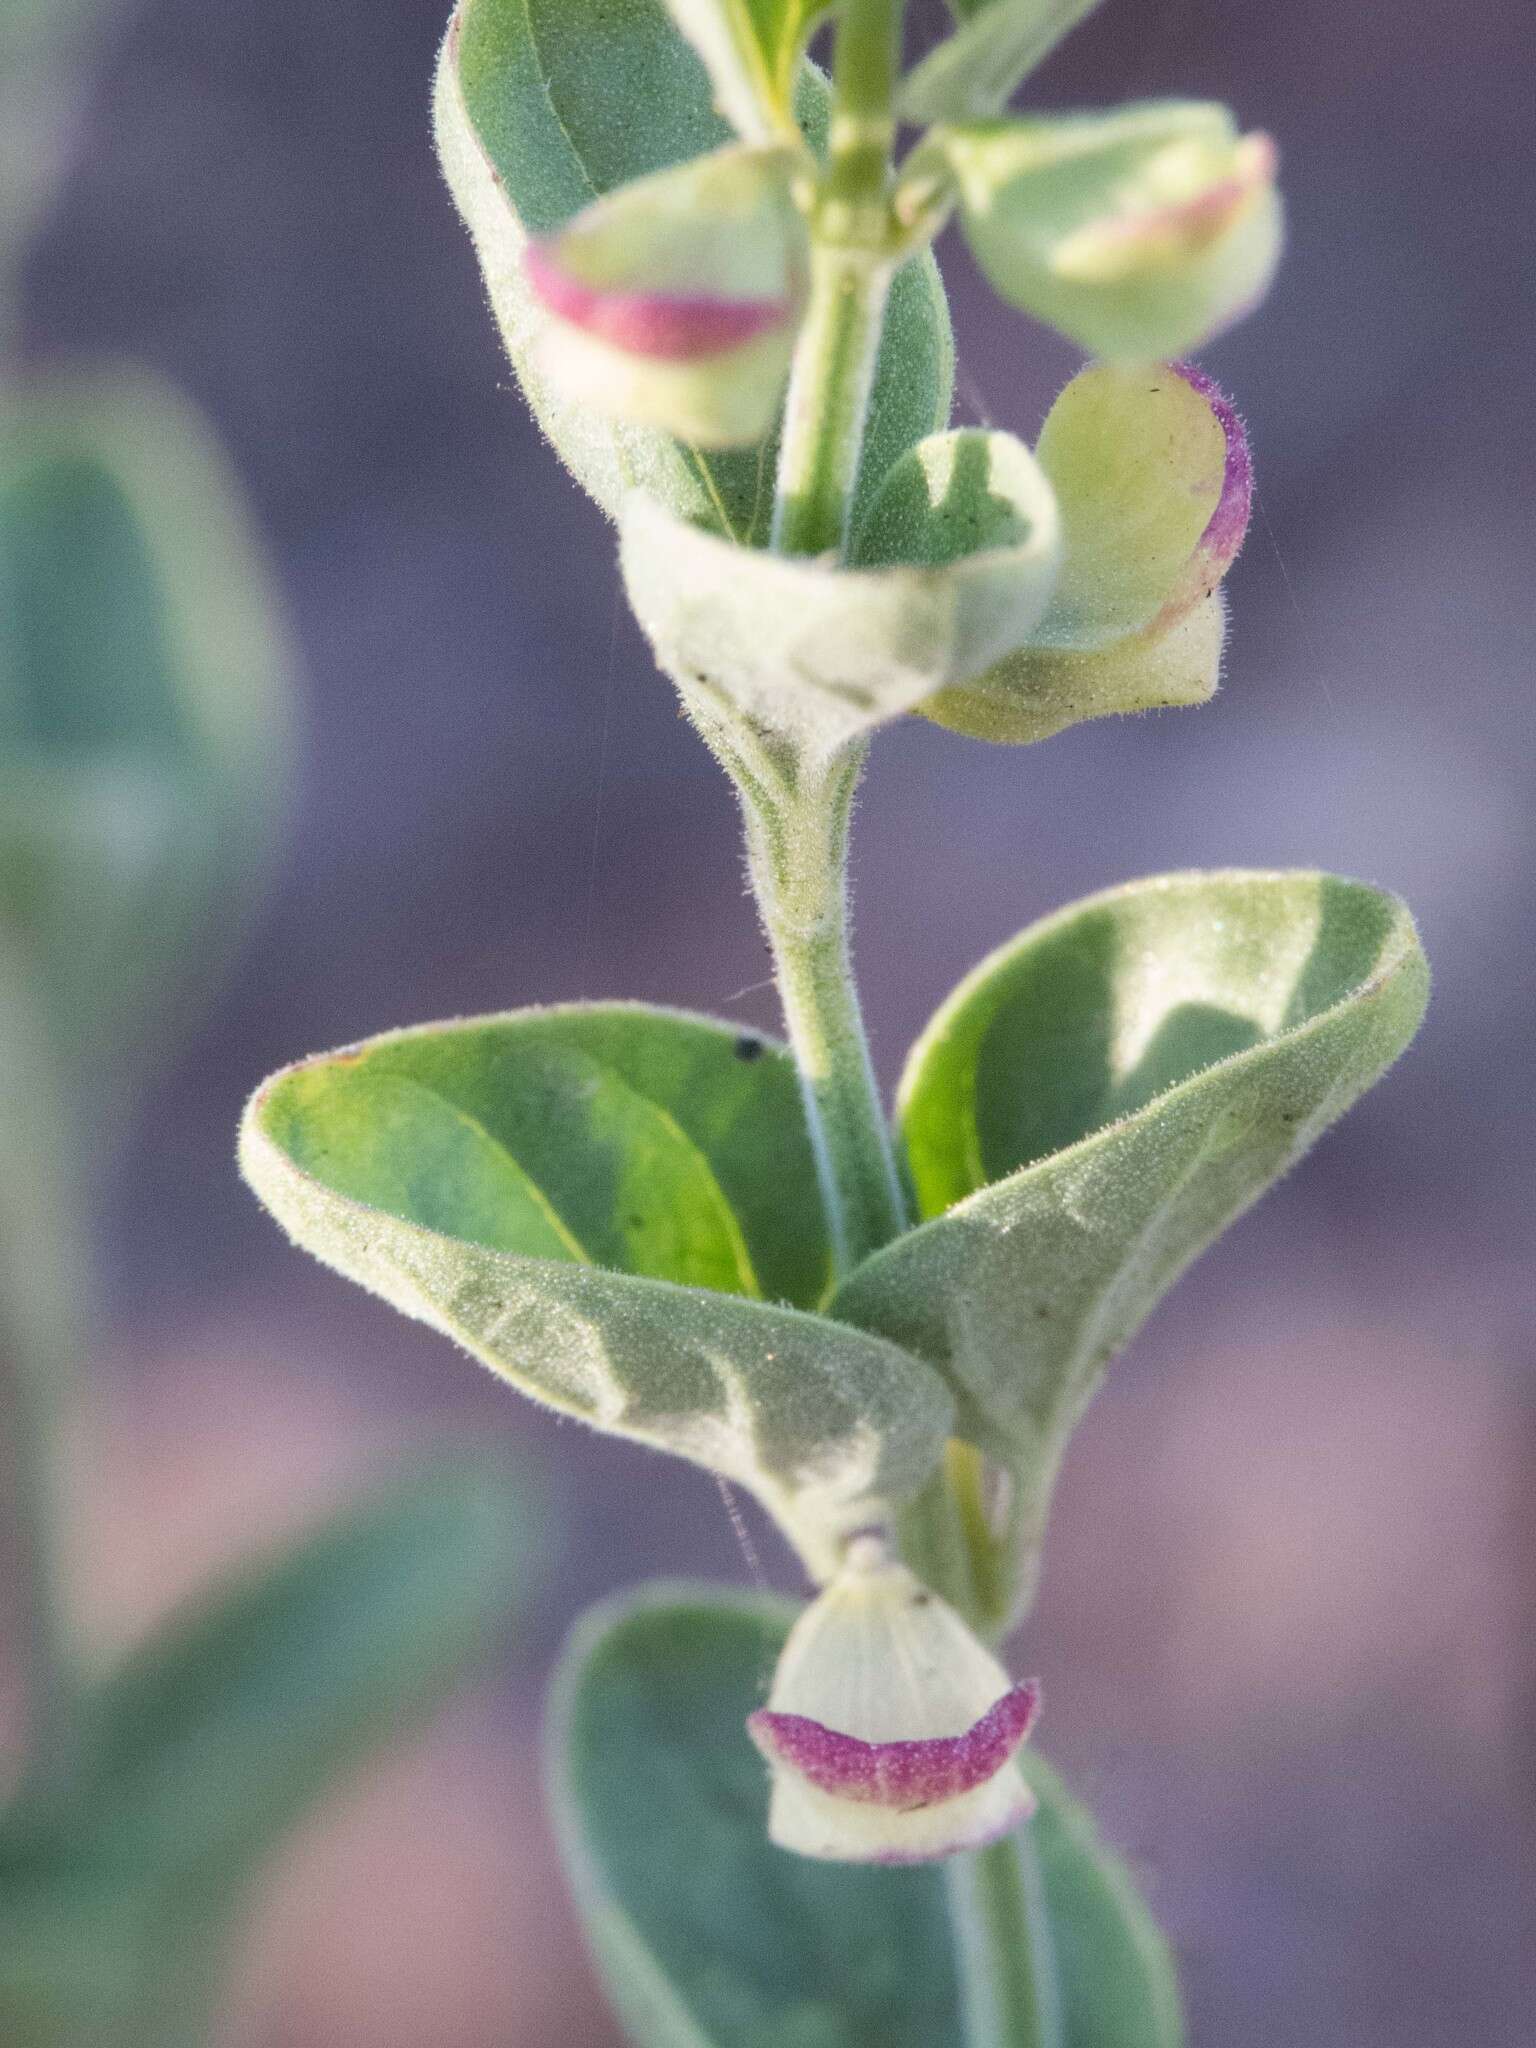 Sivun Scutellaria potosina subsp. platyphylla Epling kuva